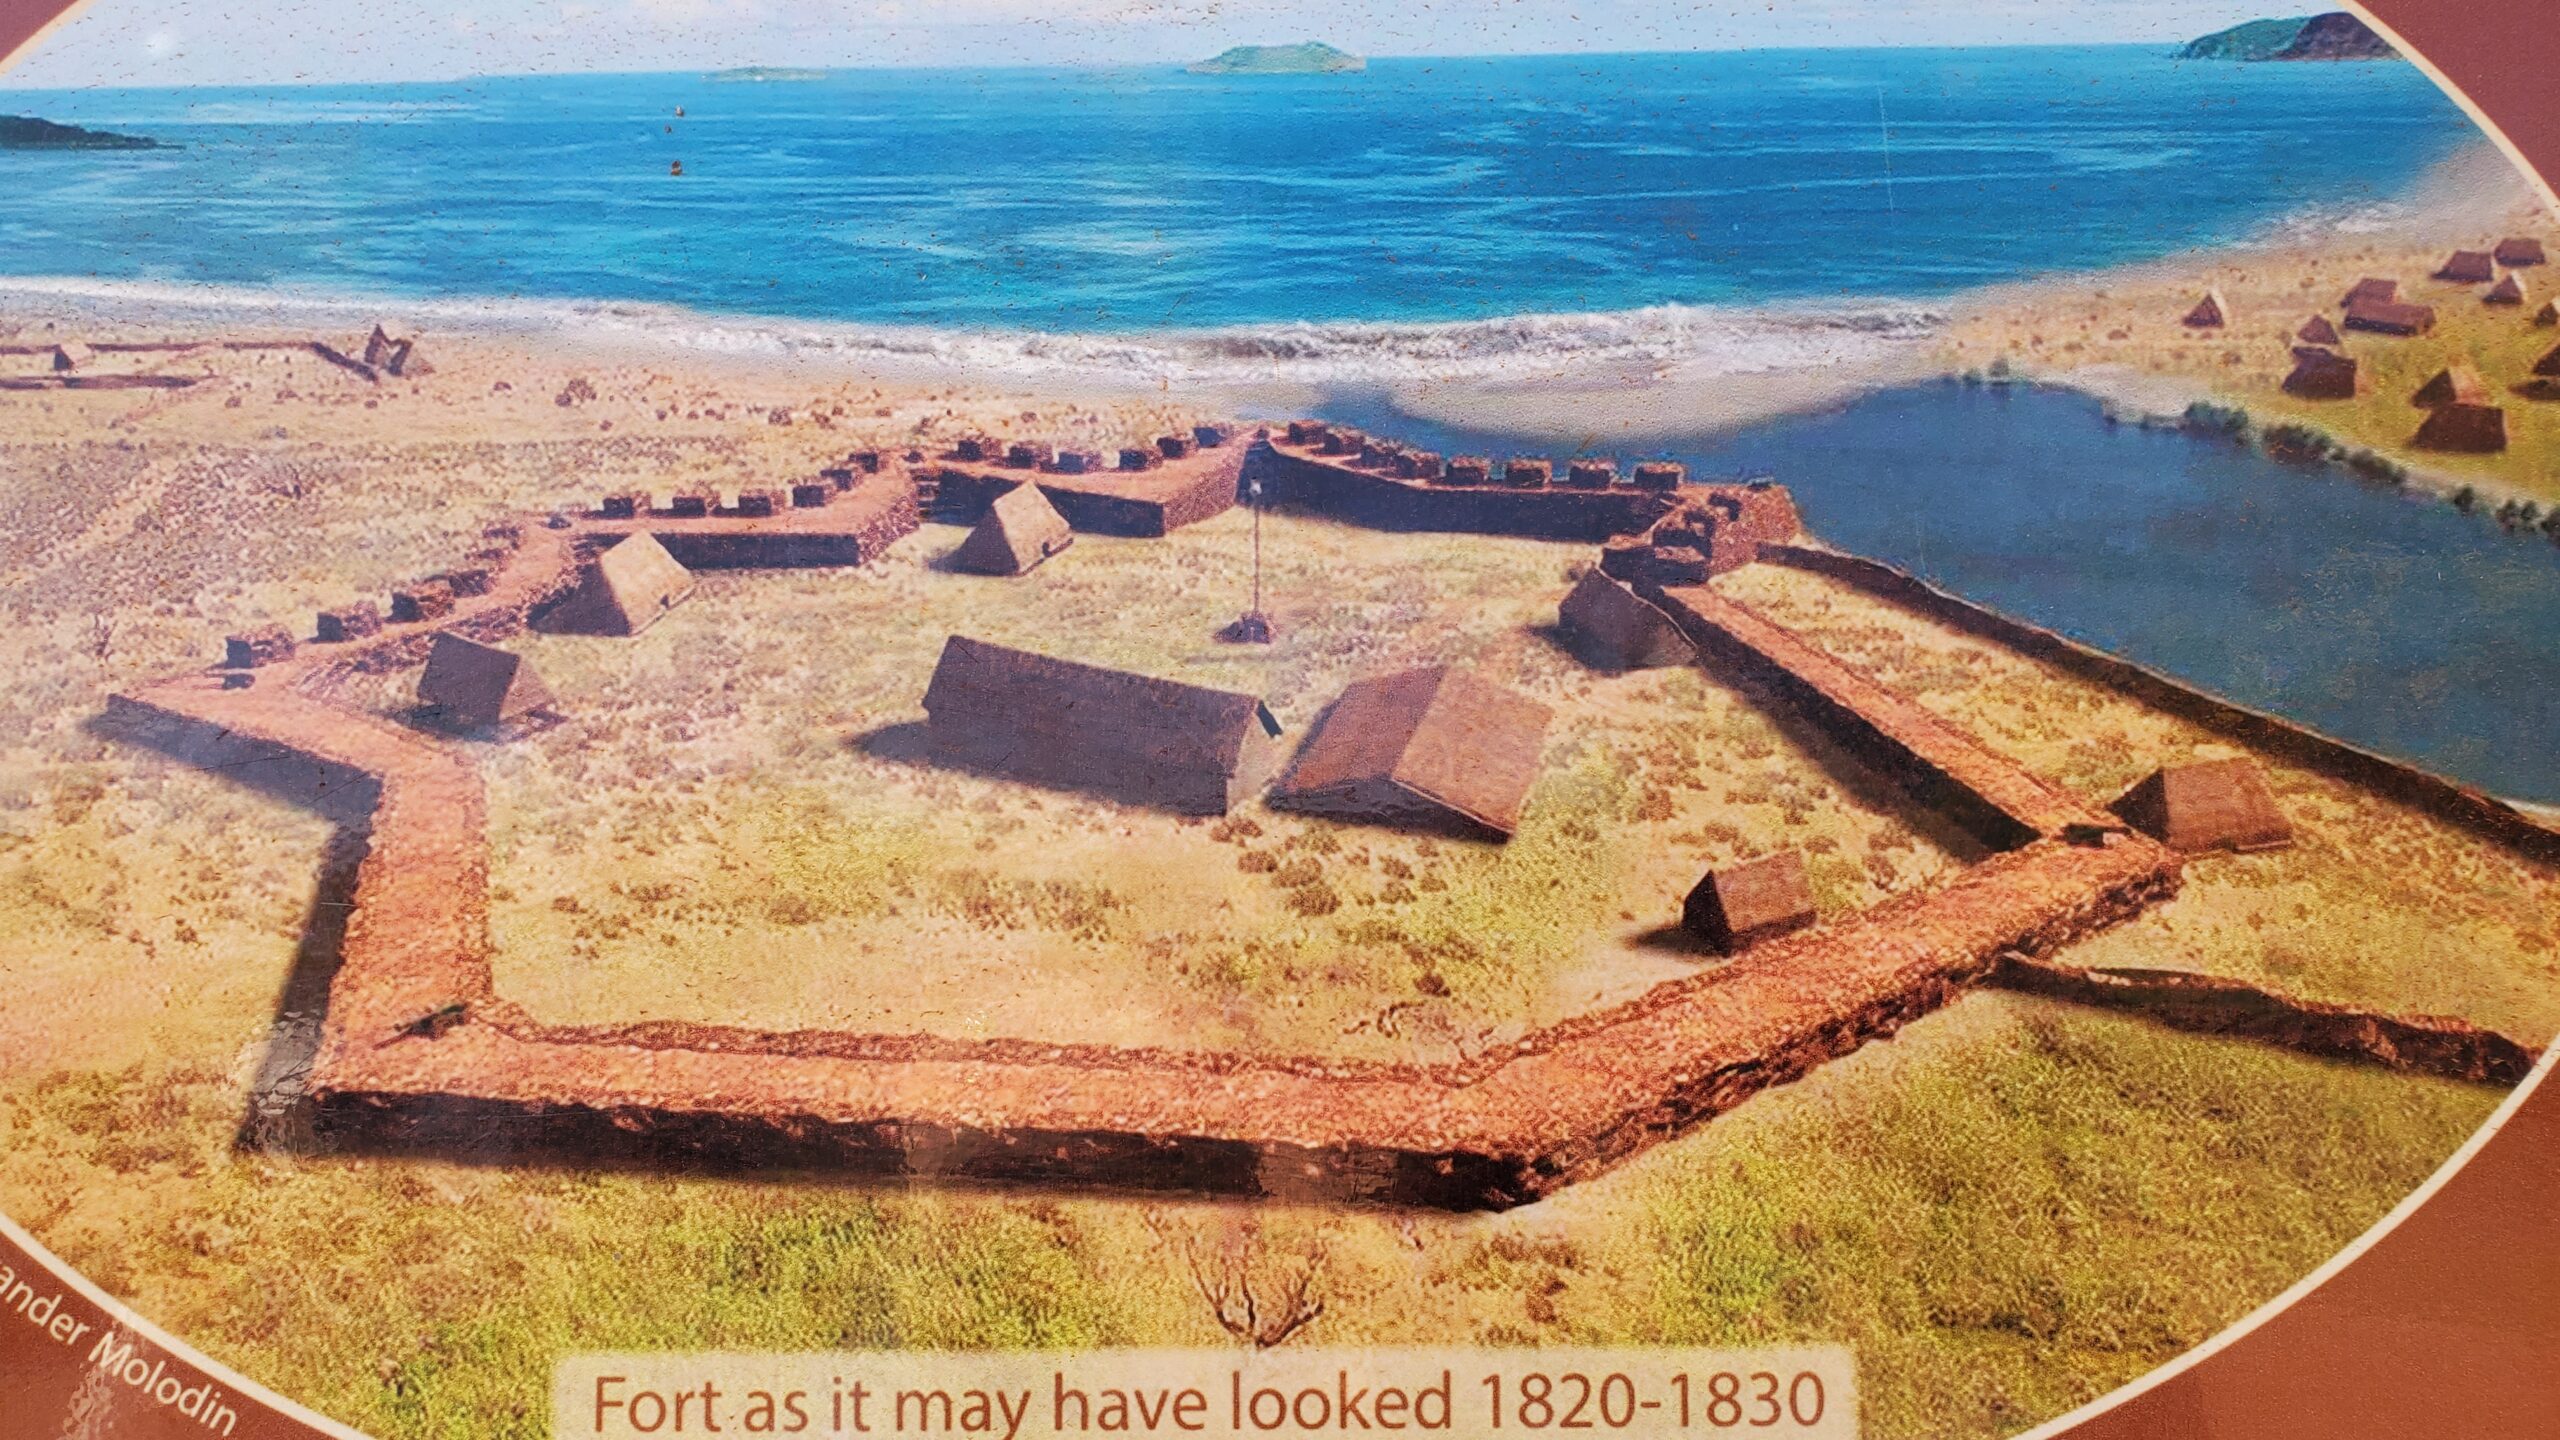 Fort Elizabeth